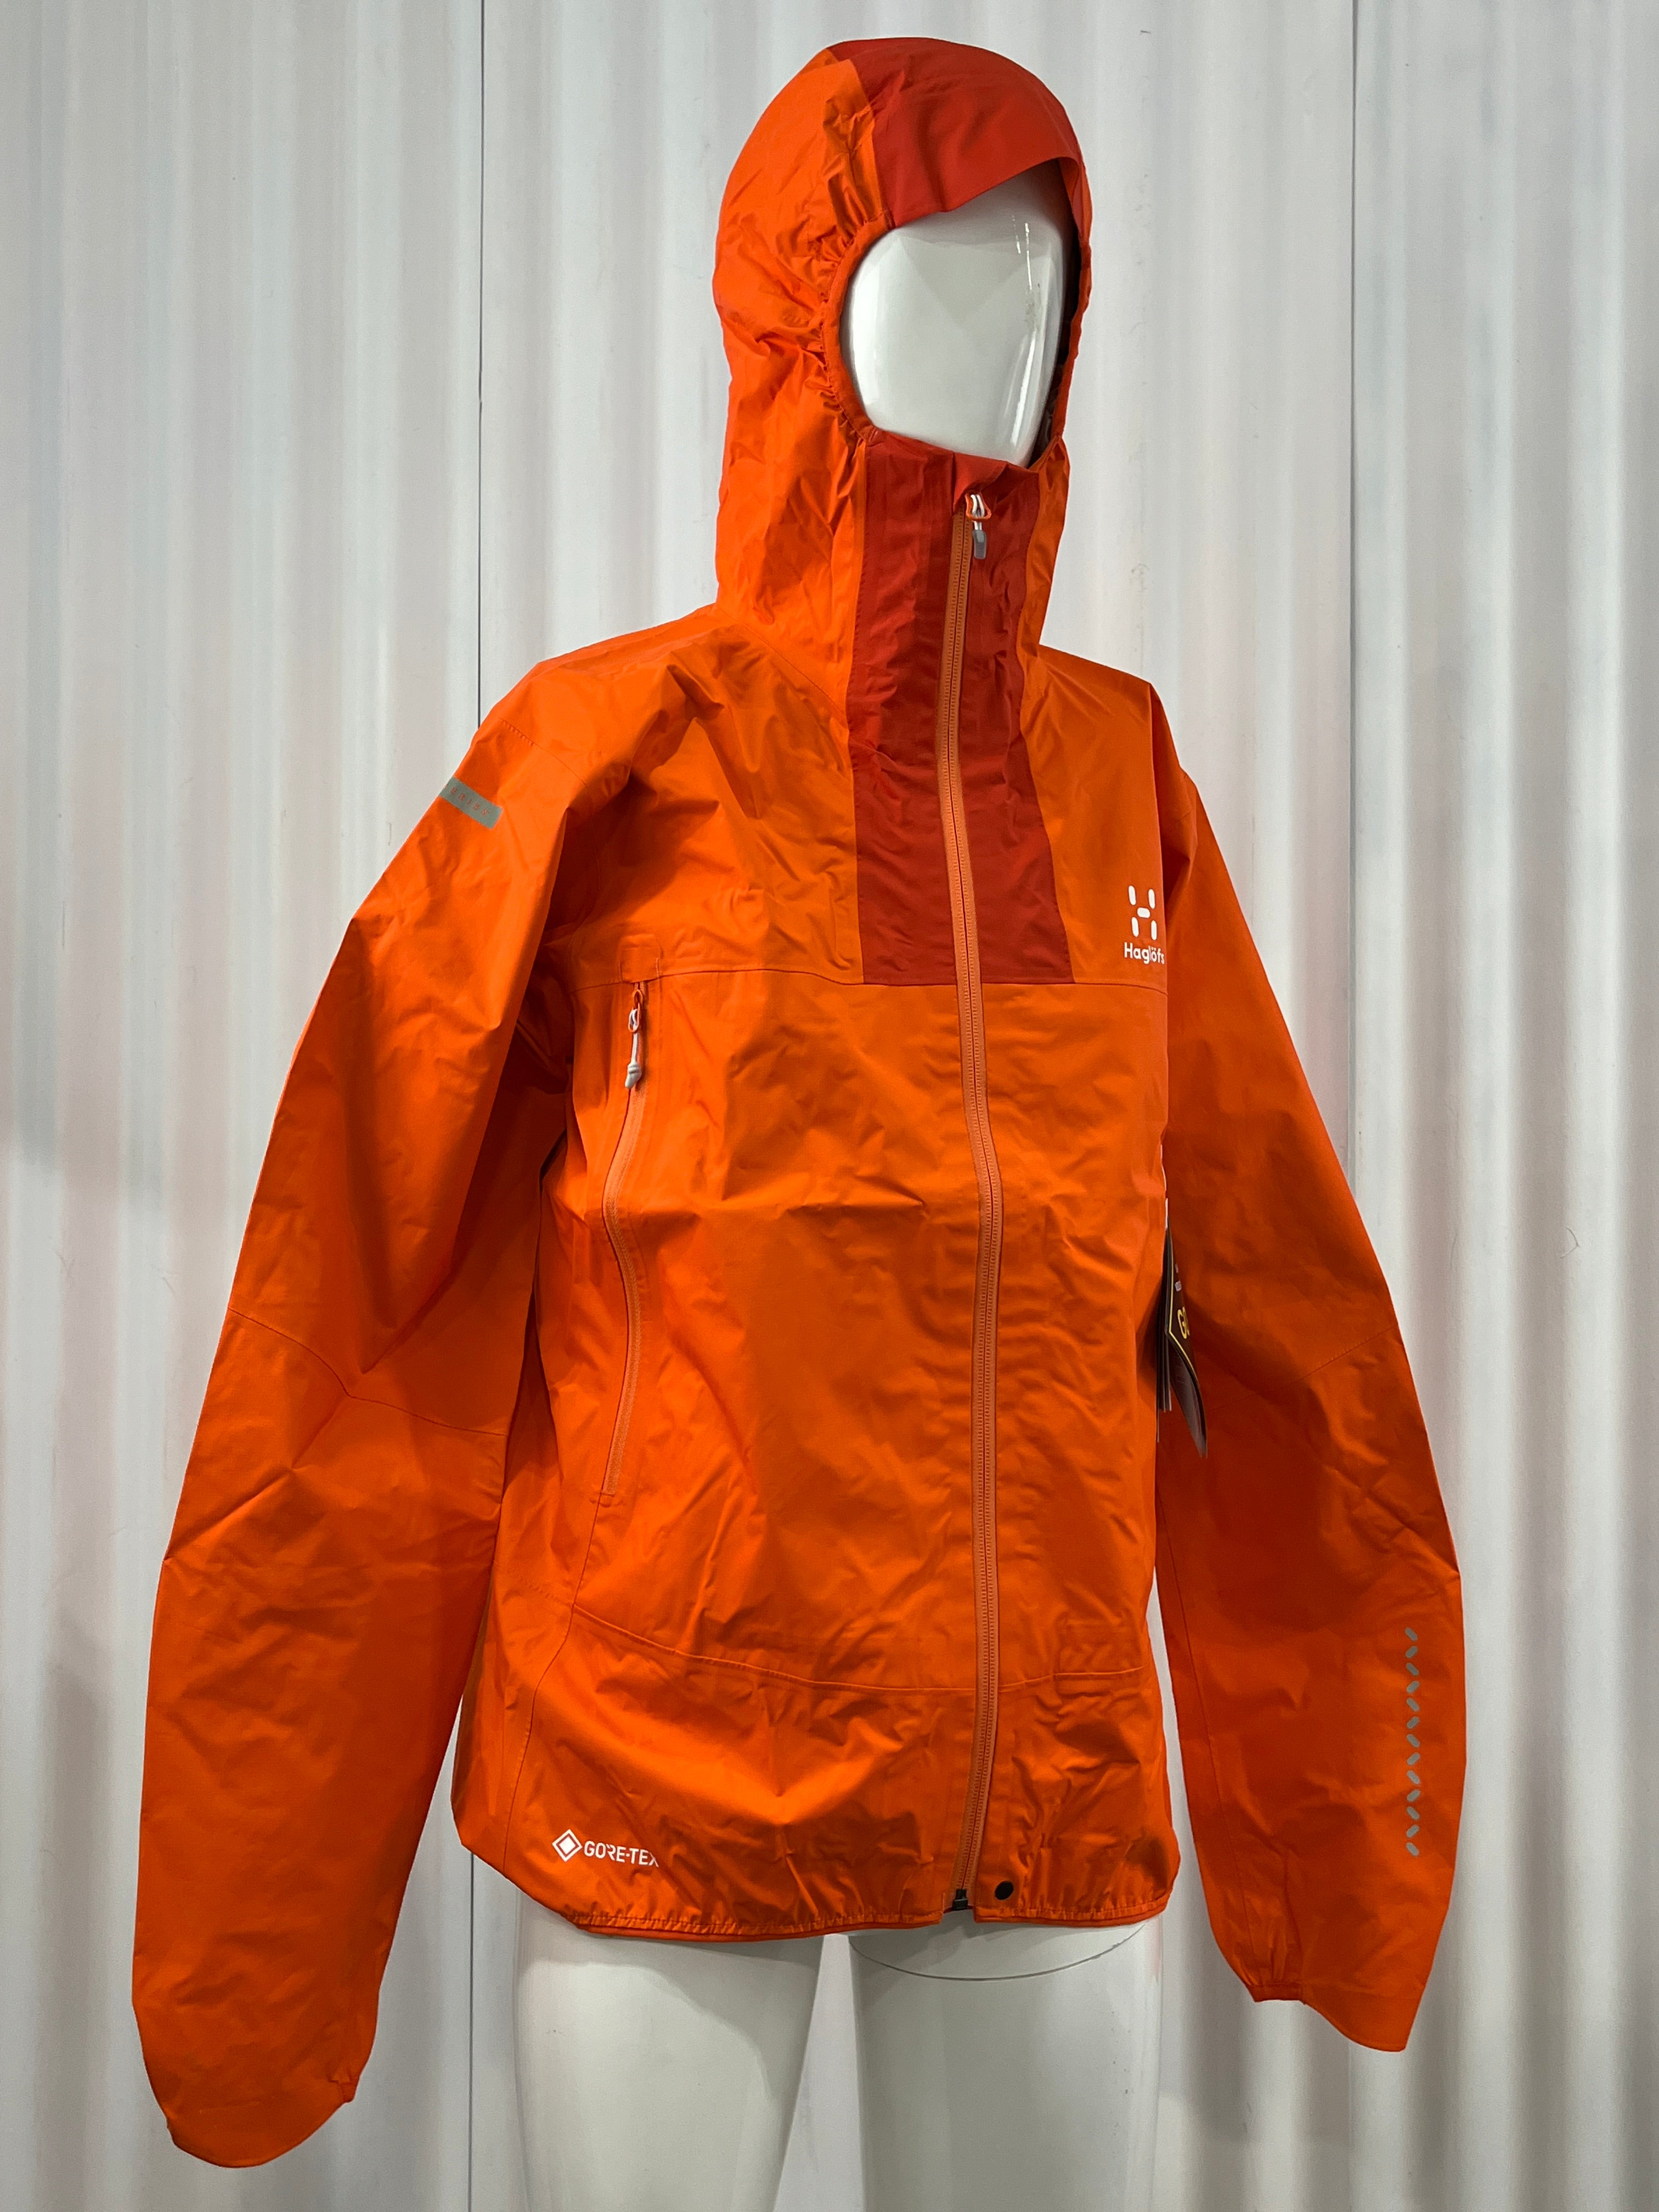 Haglofs L.I.M. GTX Rain Jacket – The Locals Sale